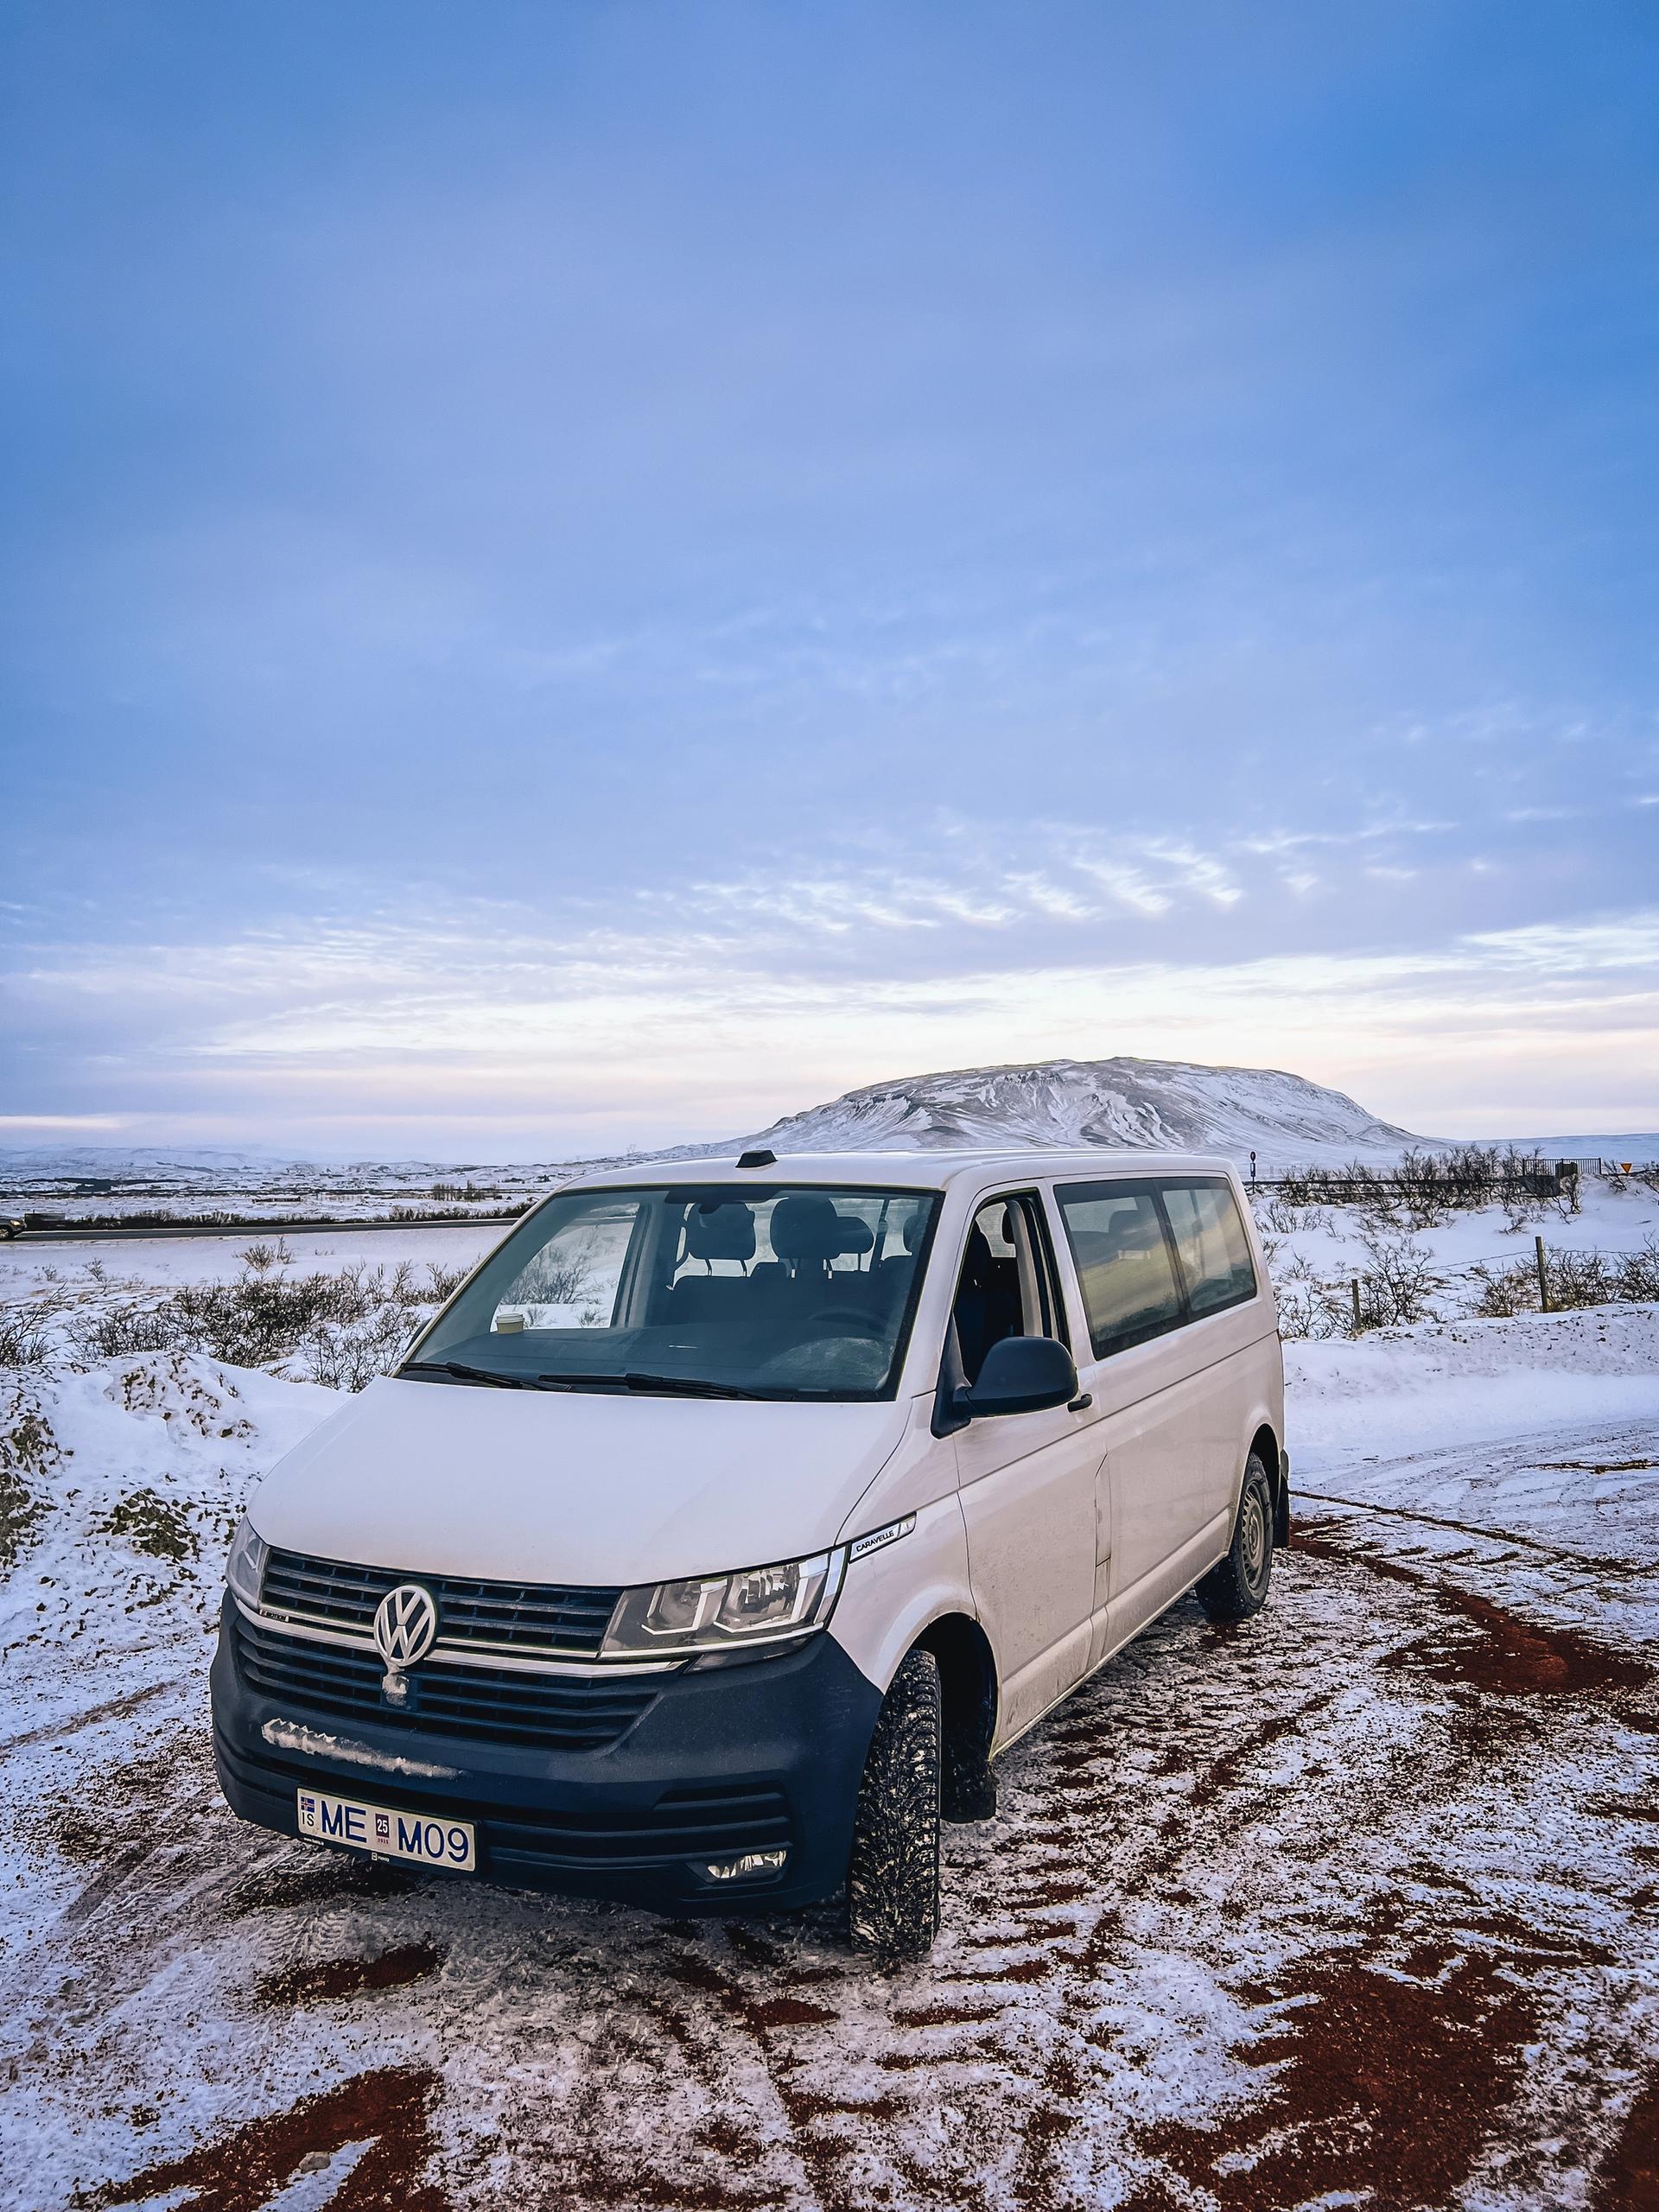 The Volkswagen minivan for 9 people in winter road of Iceland